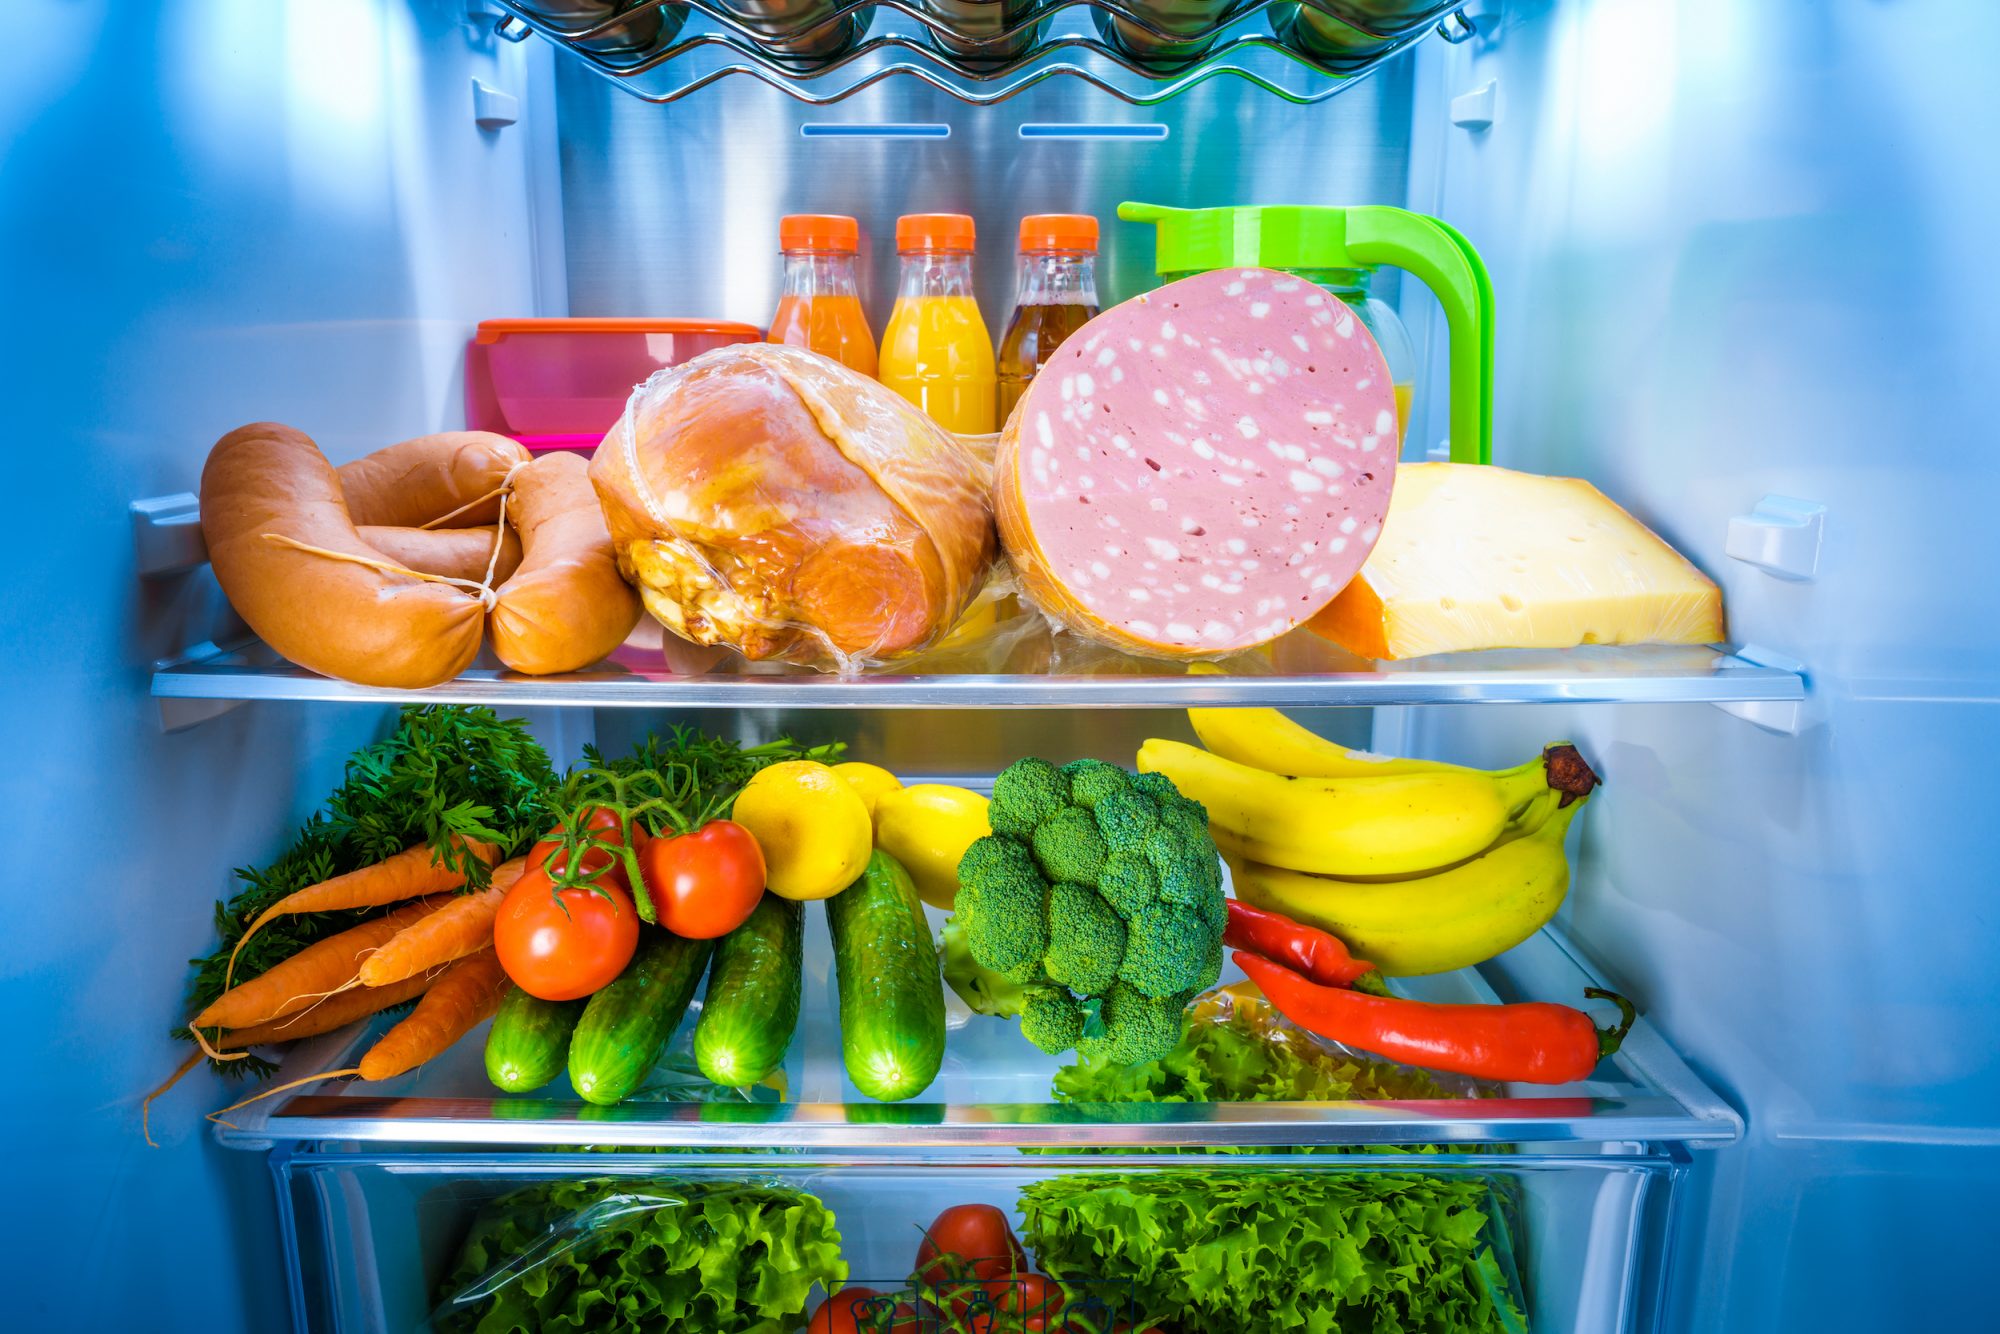 冰箱里的食物图片大全-冰箱里的食物高清图片下载-觅知网